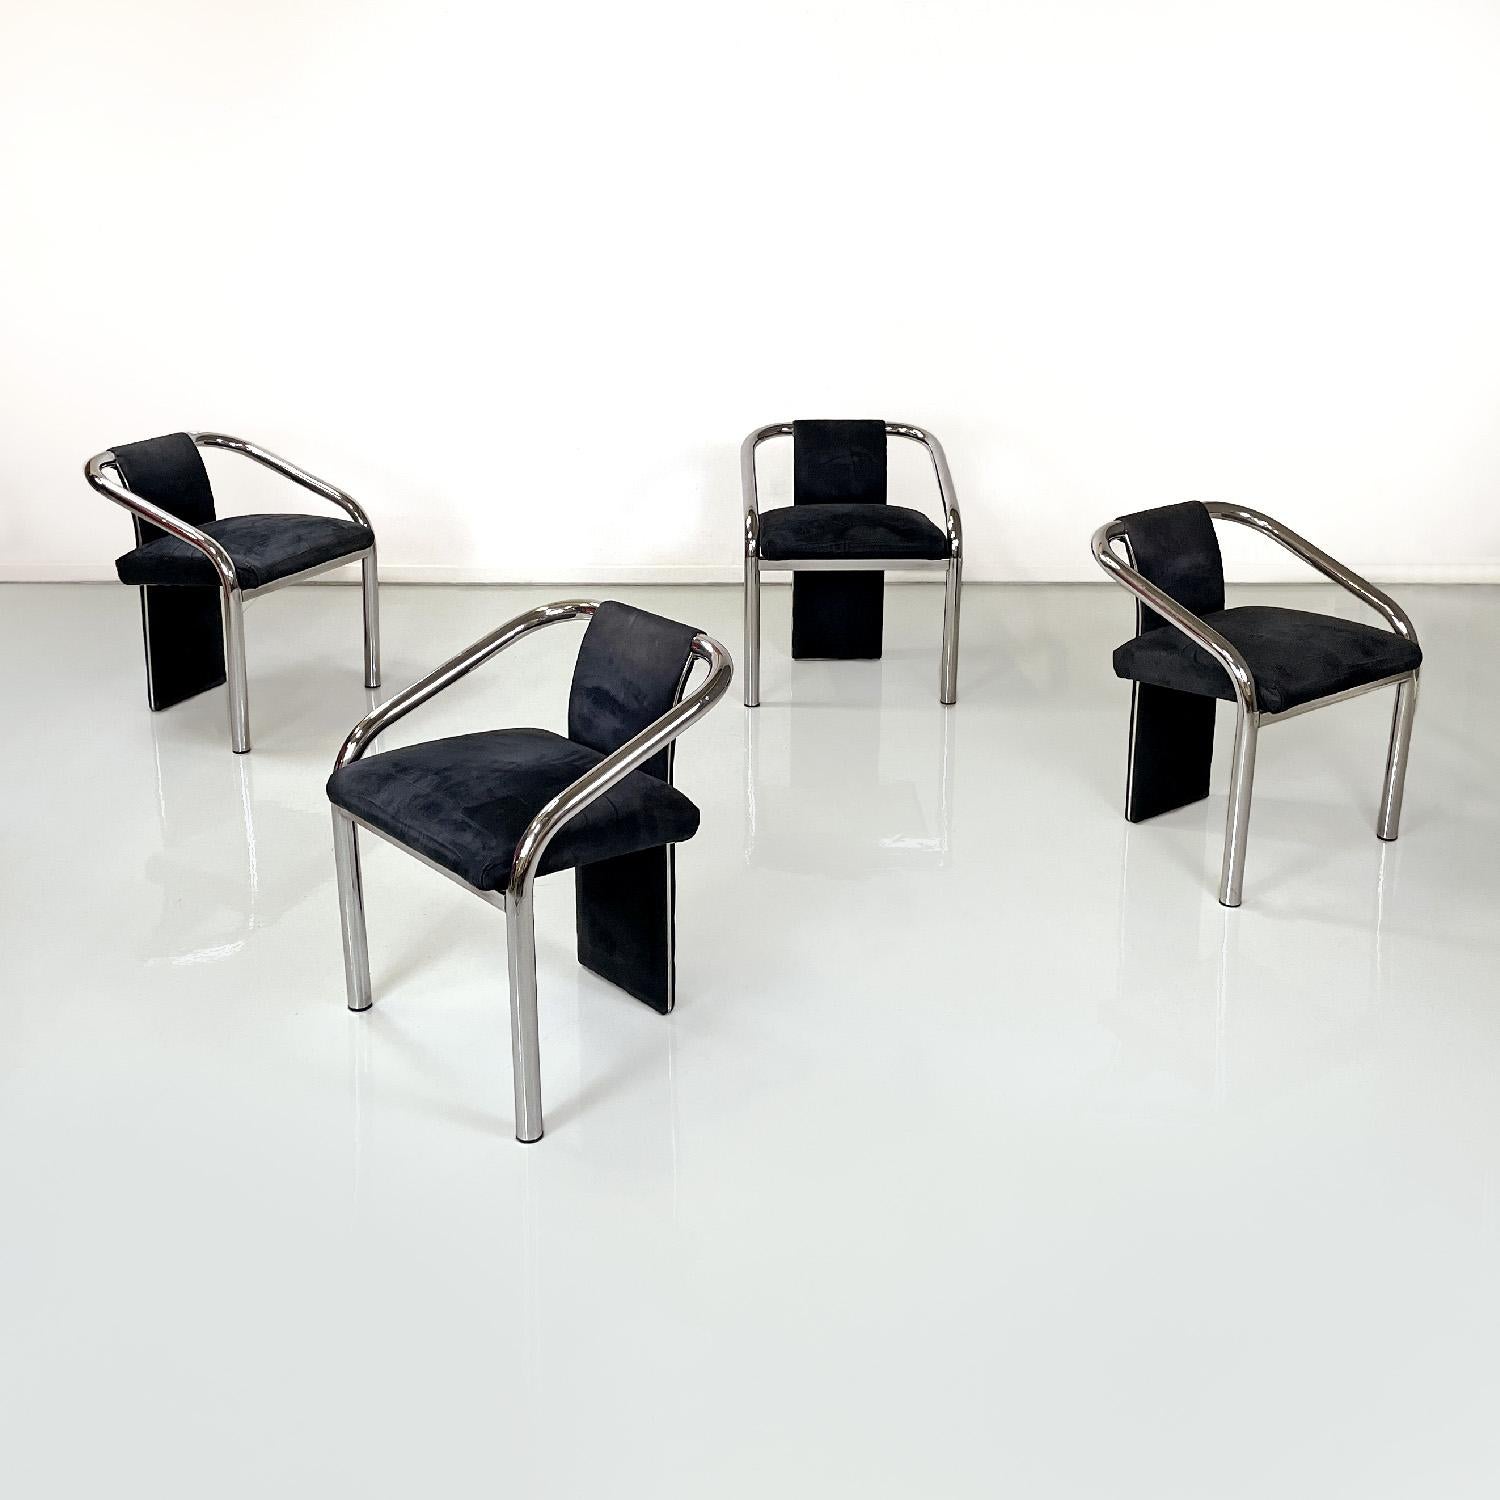 Chaises modernes italiennes en velours bleu foncé et métal chromé, années 1980
Ensemble de quatre chaises à assise rectangulaire. Le dossier s'étend jusqu'au sol et est recouvert de velours bleu foncé foncé comme l'assise. La structure est en acier